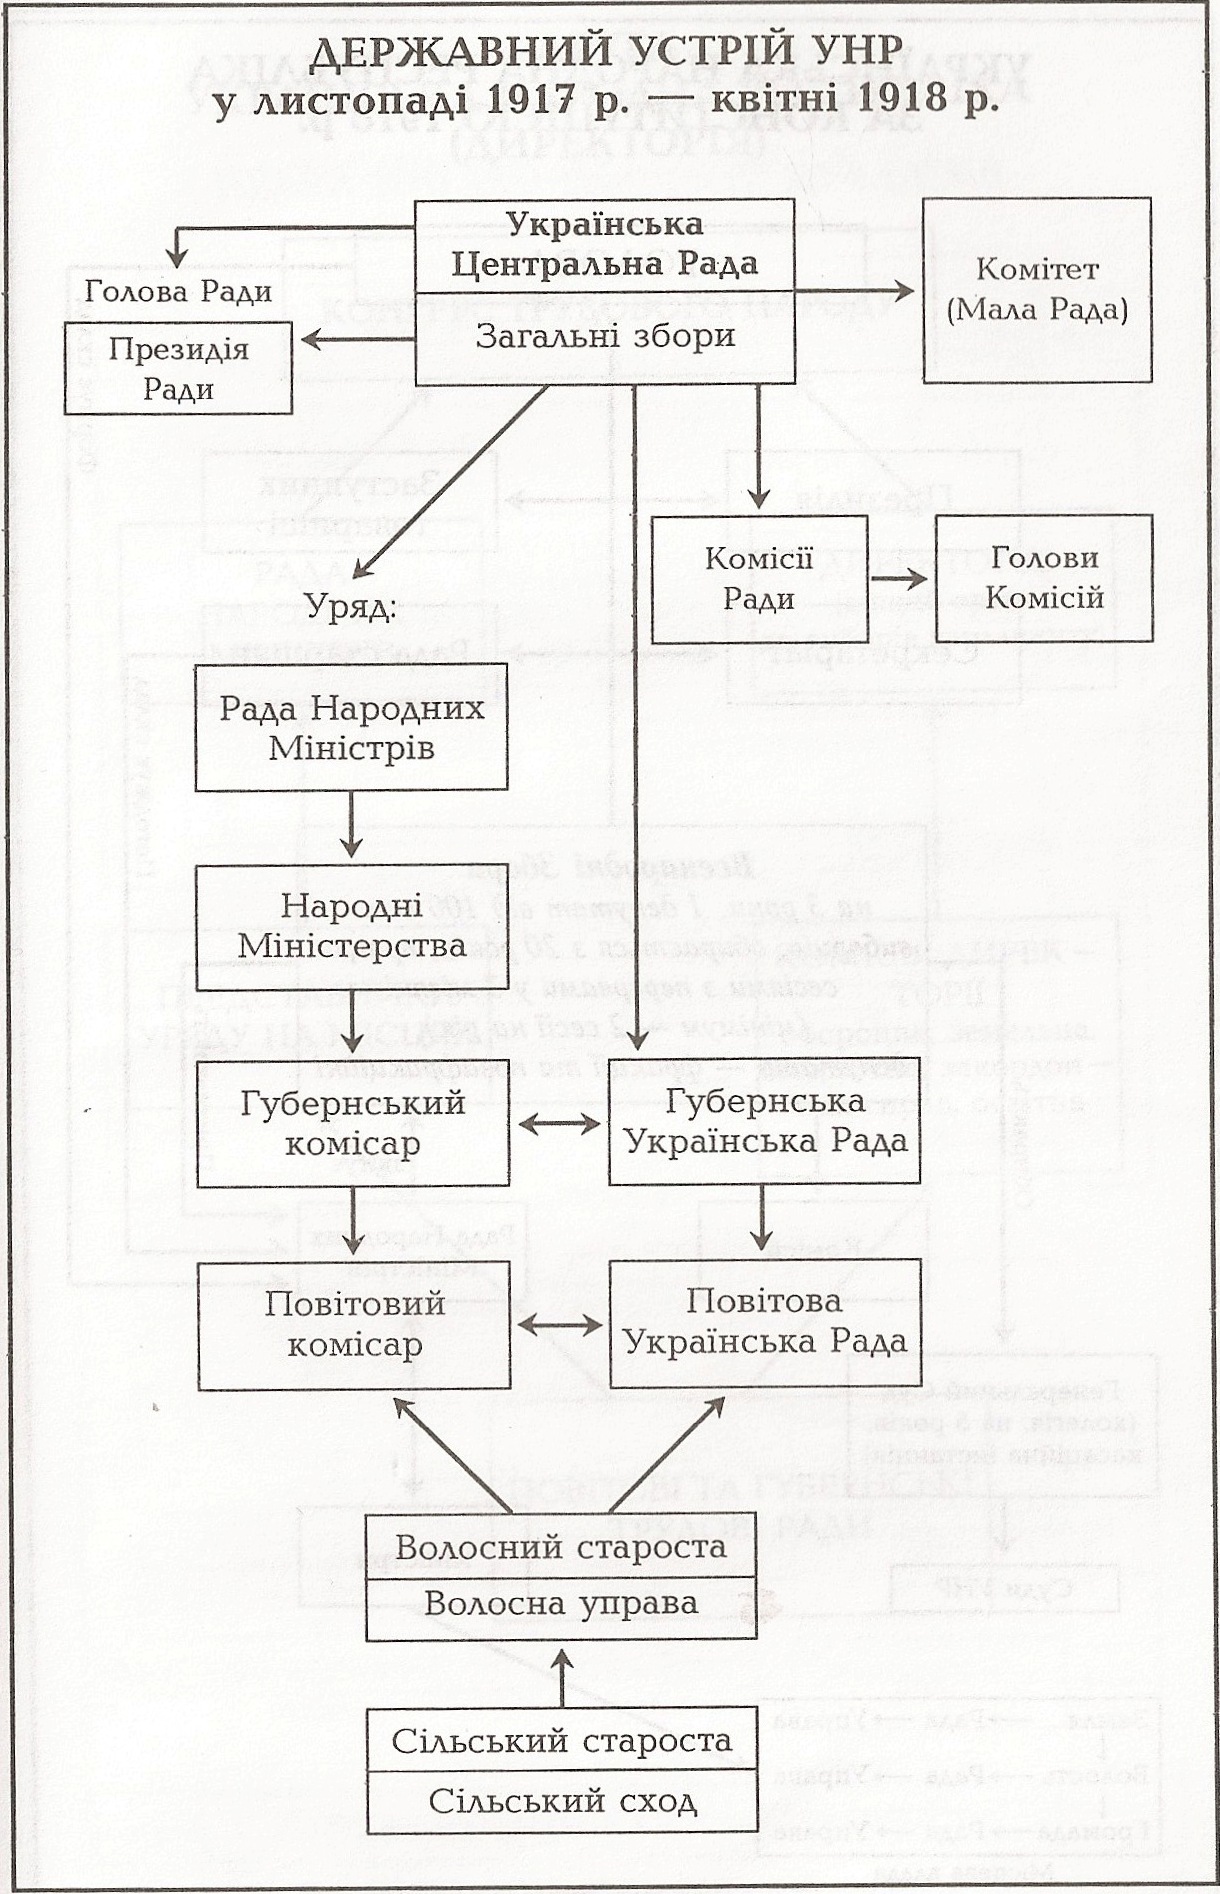 Таблица: Государственное устройство УНР в ноябре 1917 г. - апреле 1918 г.